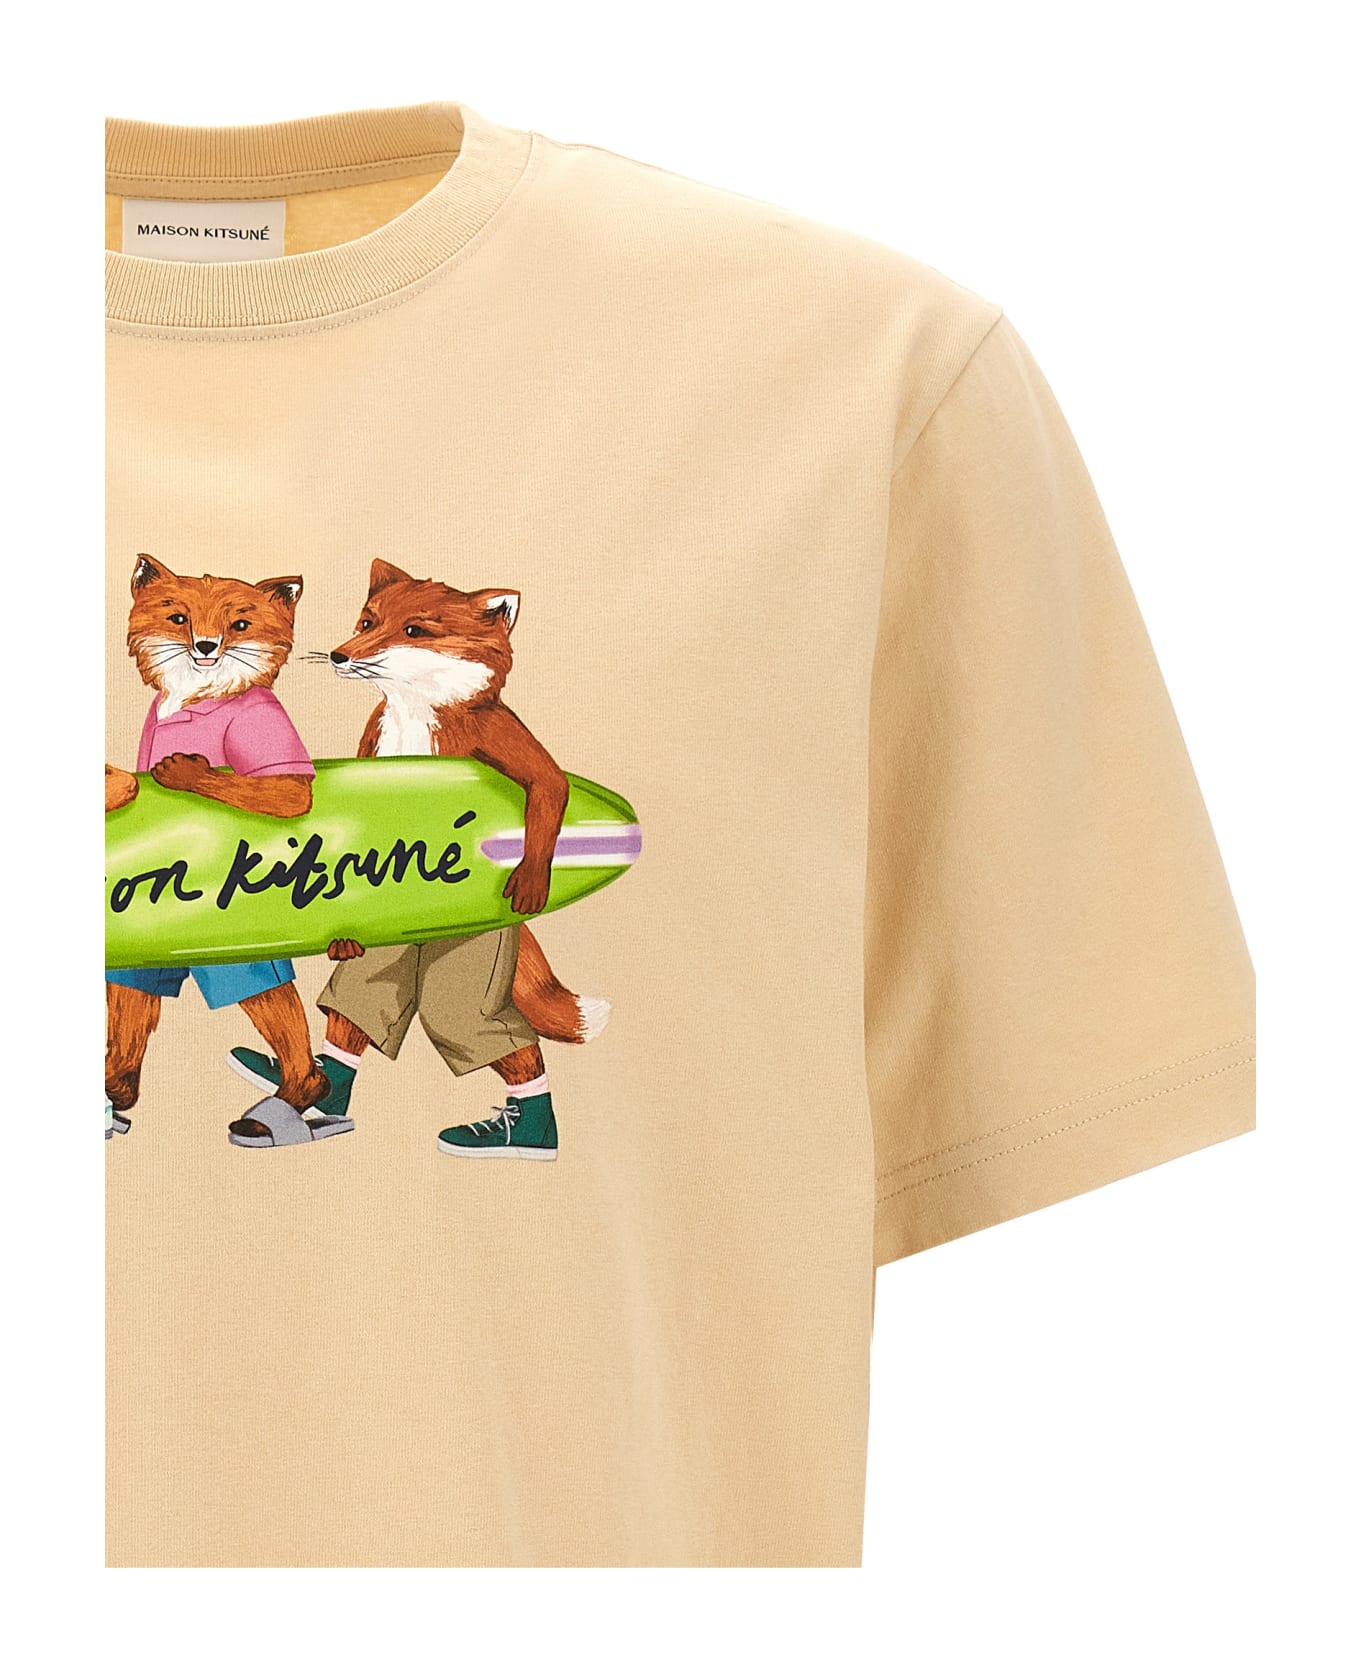 Maison Kitsuné 'surfing Foxes' T-shirt - Beige シャツ